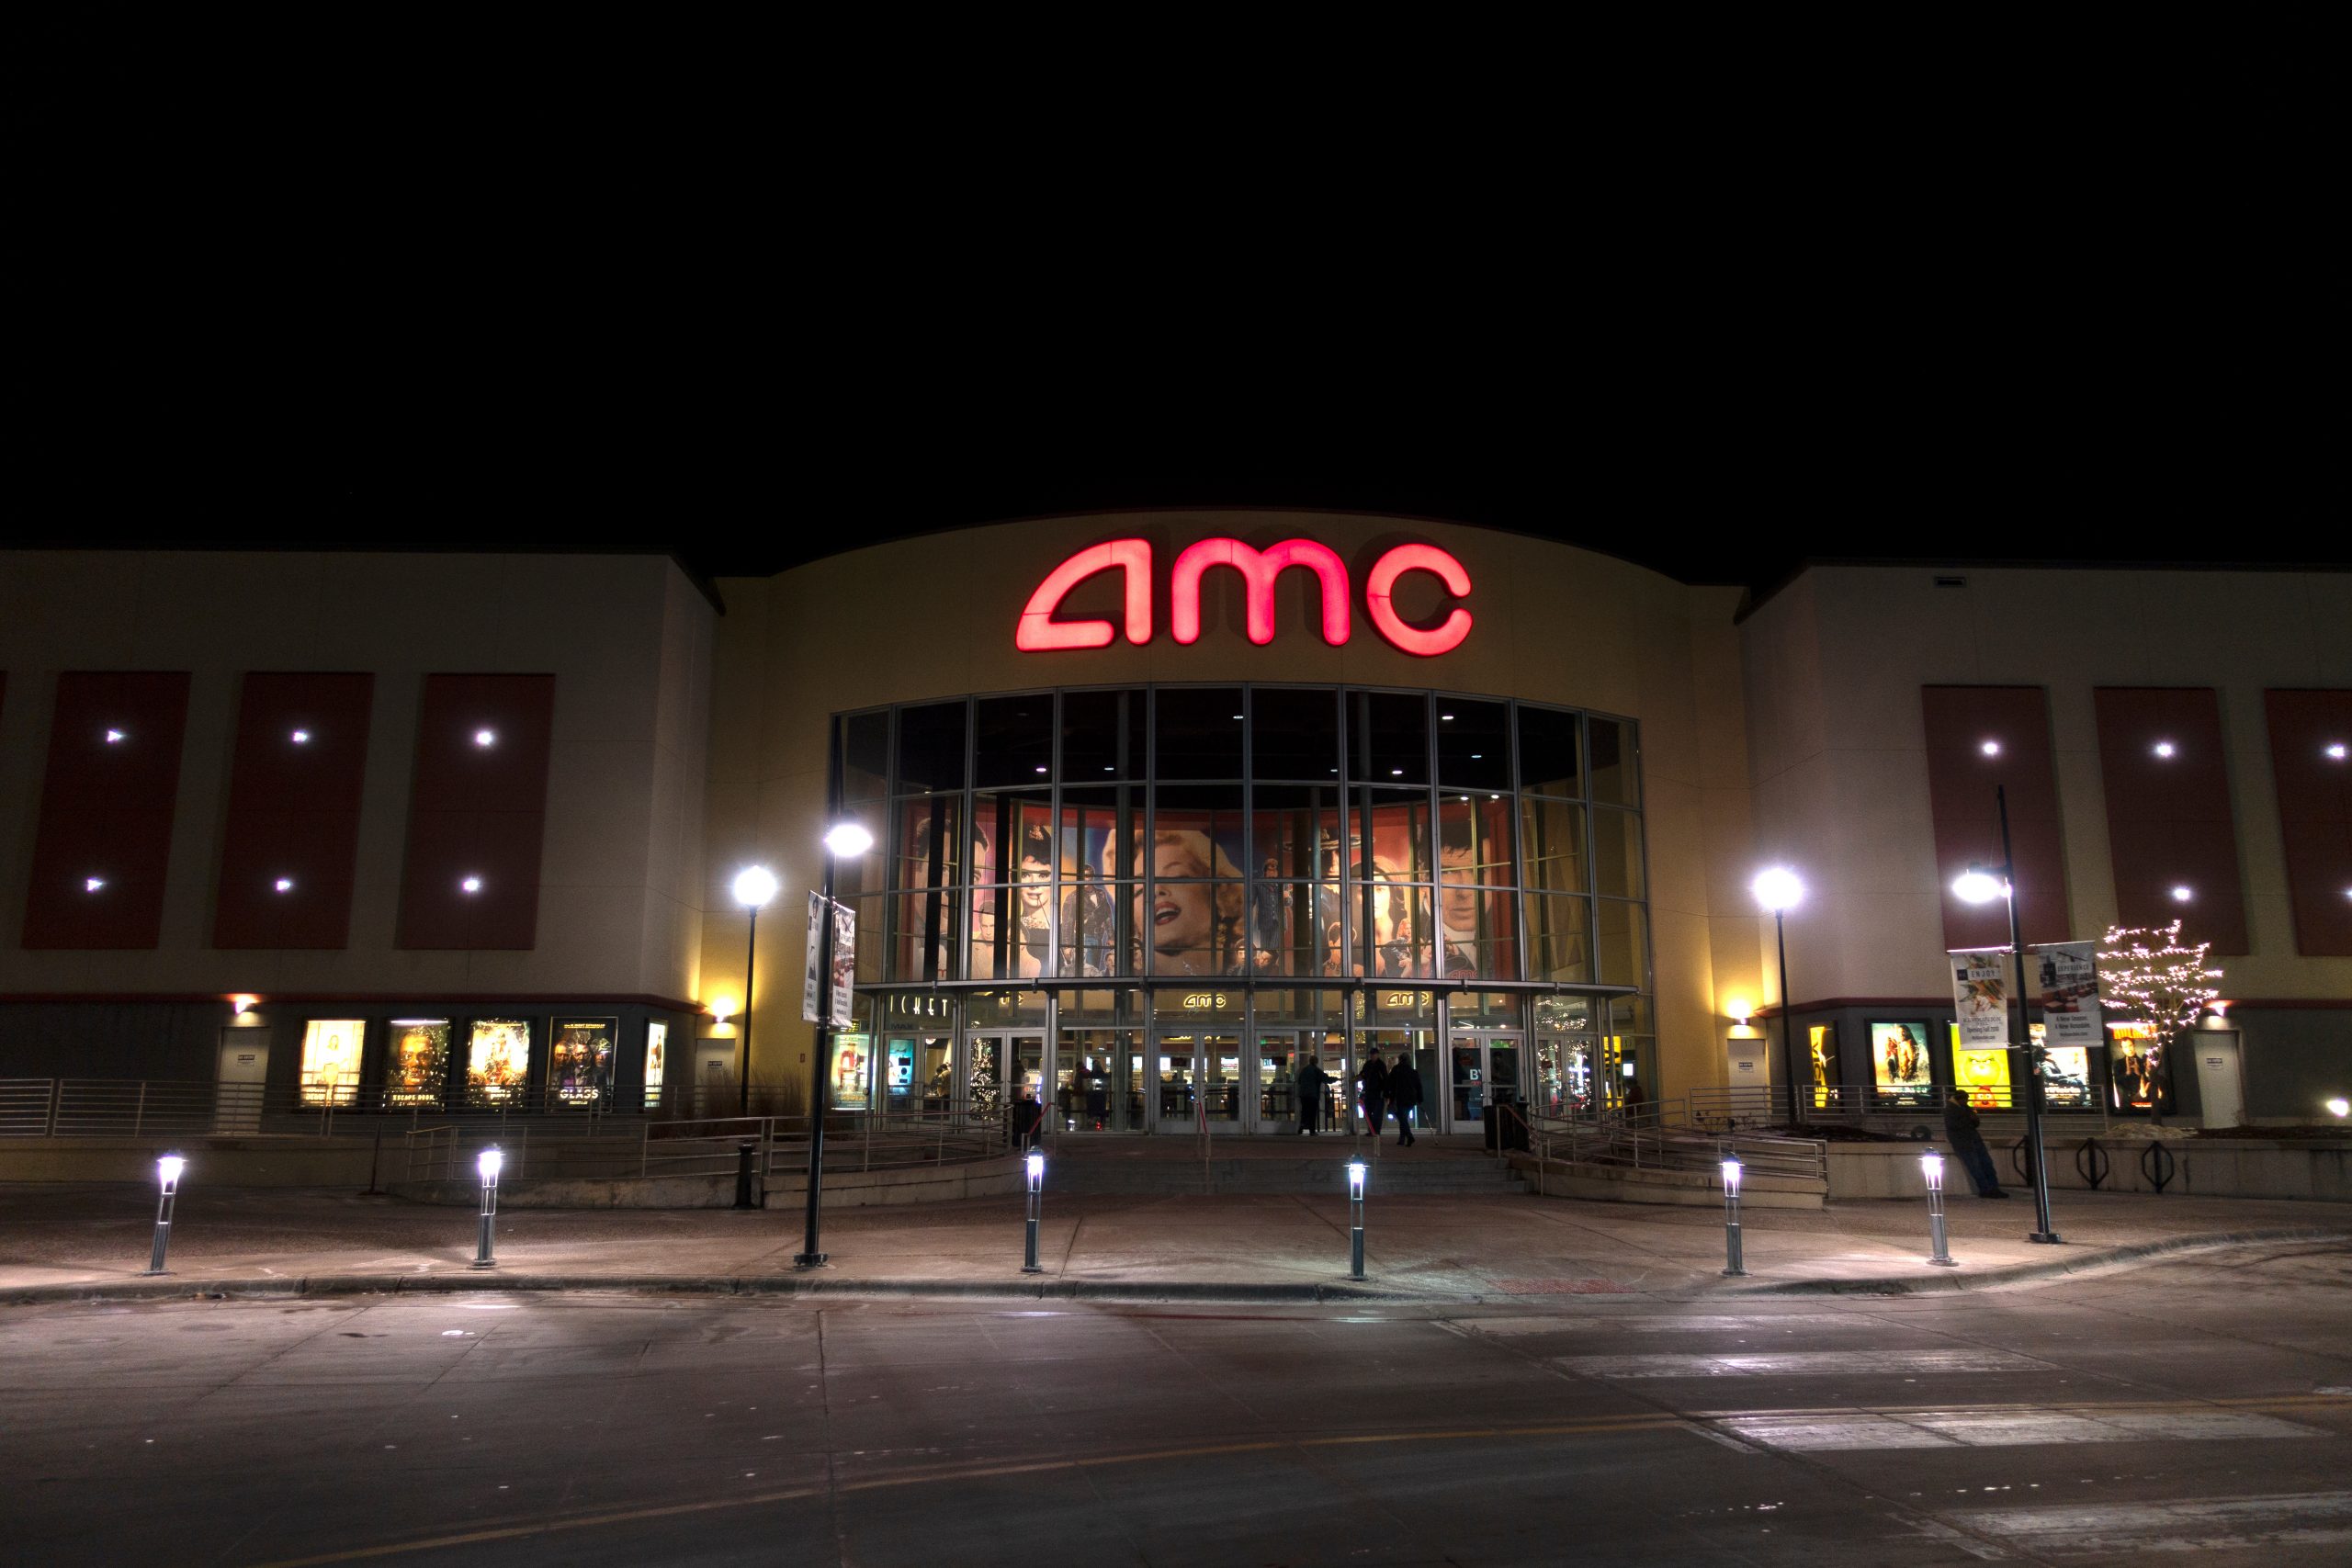 AMC Theatre location